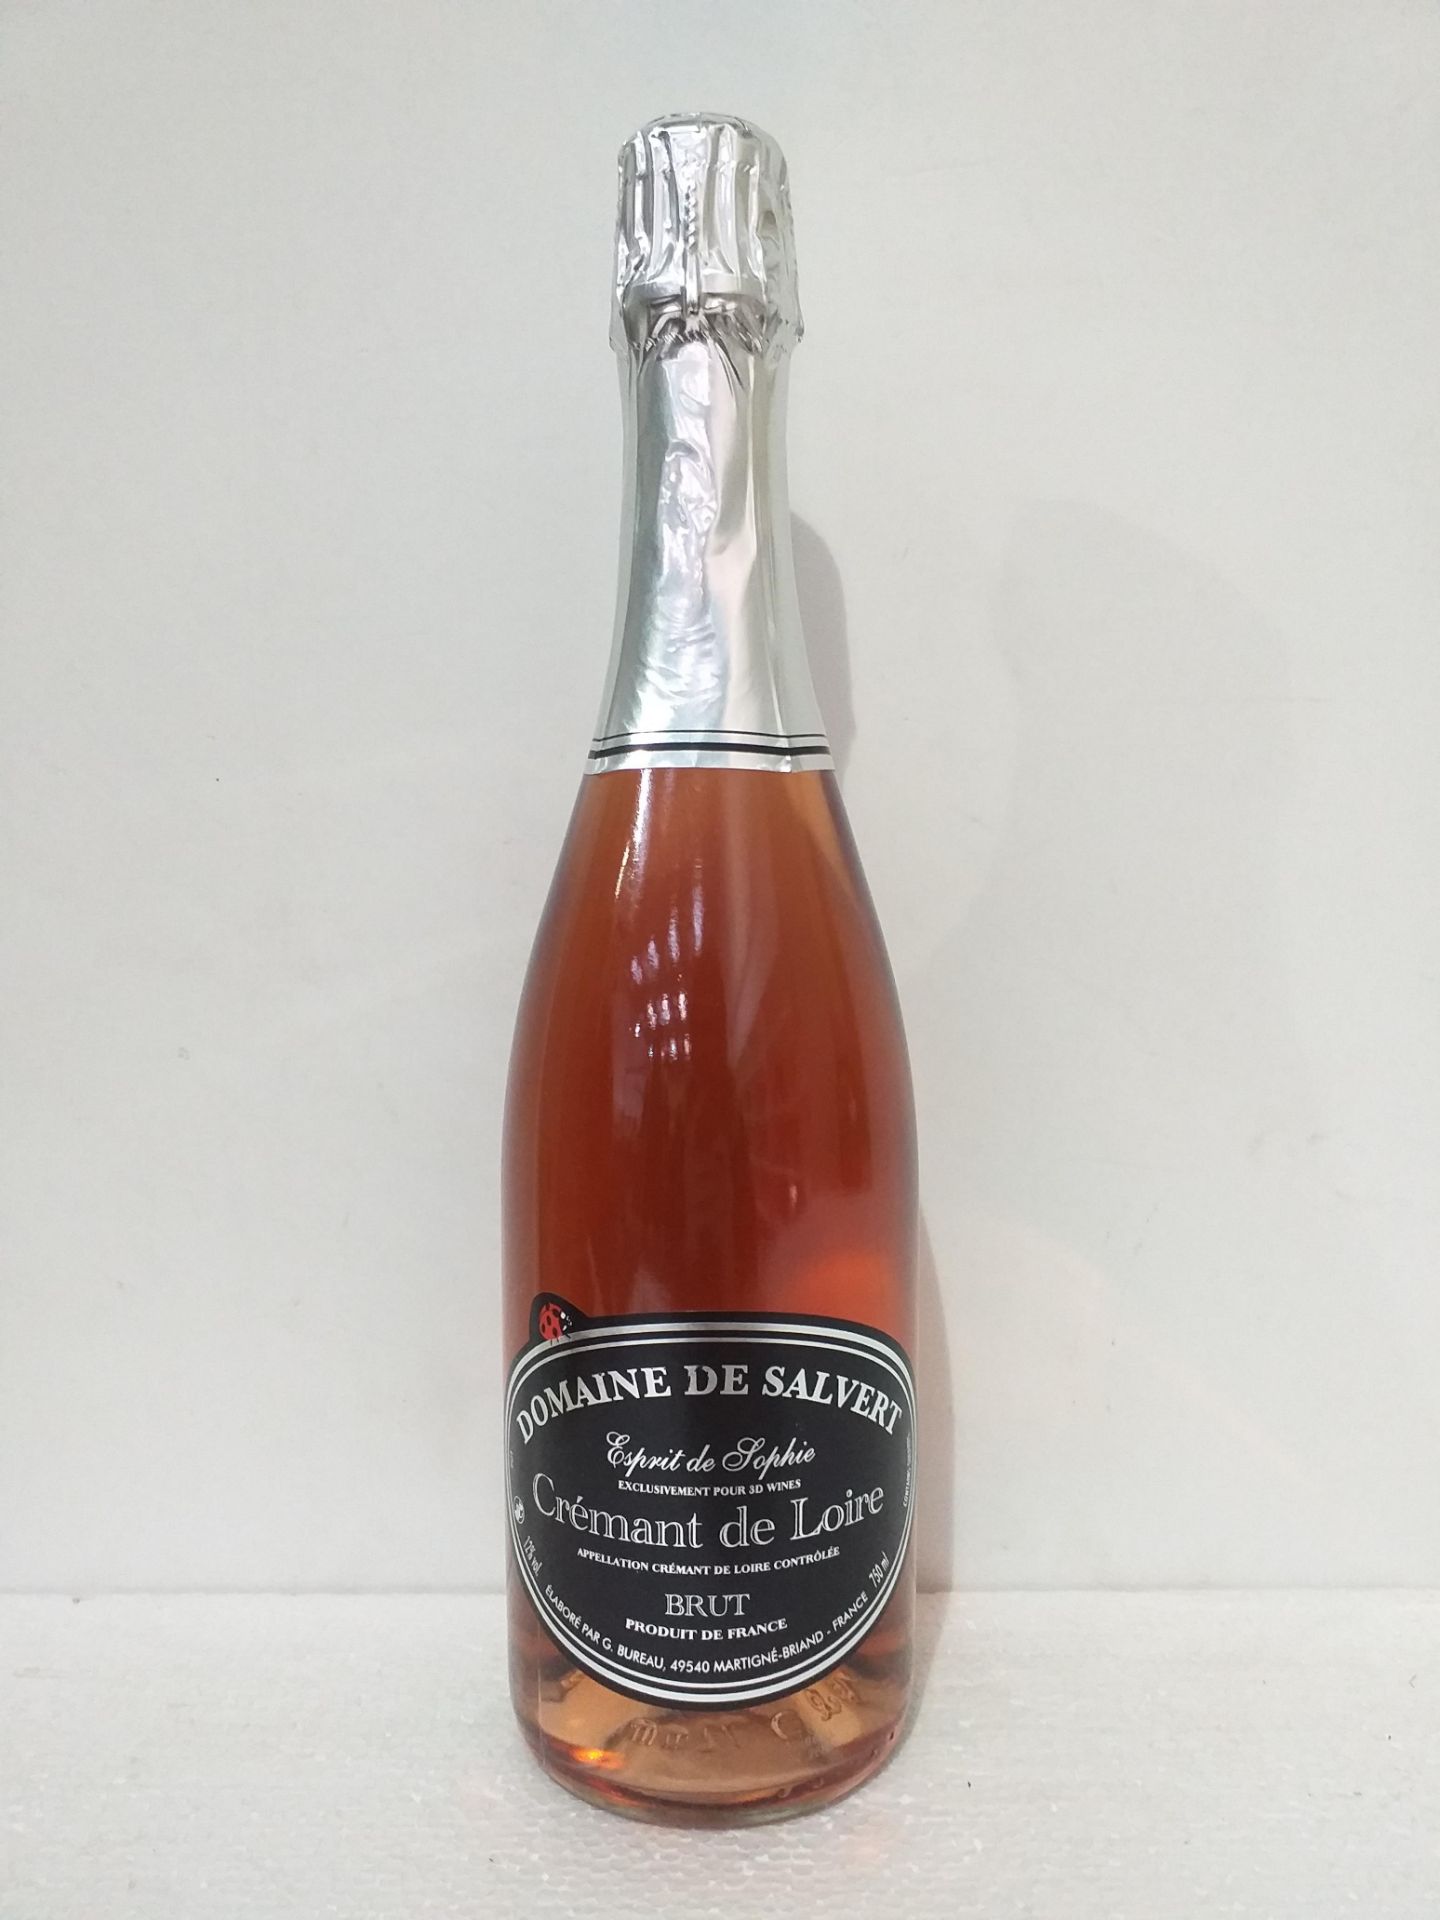 12 Bottles of Cremant de Loire rose Cuvee Esprit de Sophie